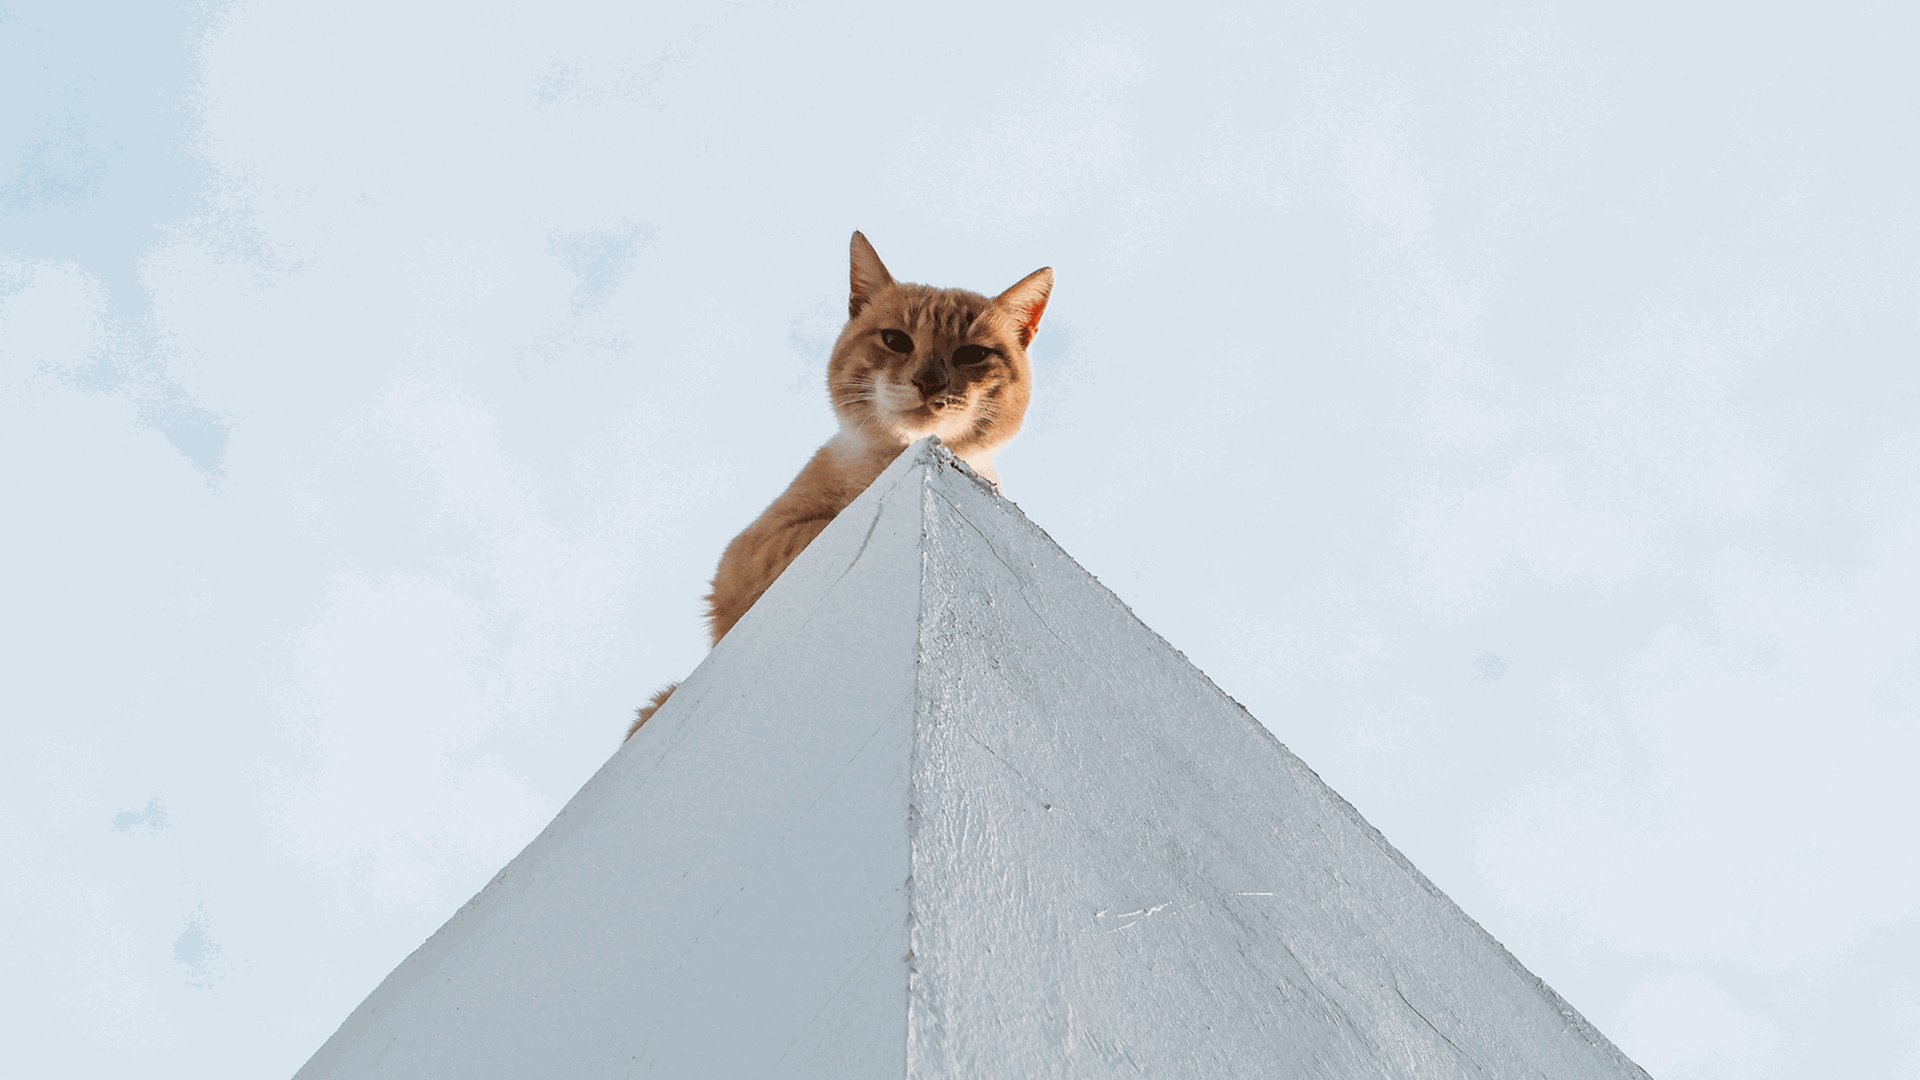 "Katzen und manche Väter haben sieben Leben". Eine rothaarige Katze sitzt auf einer Pyramide und schaut hinunter in die Kamera.